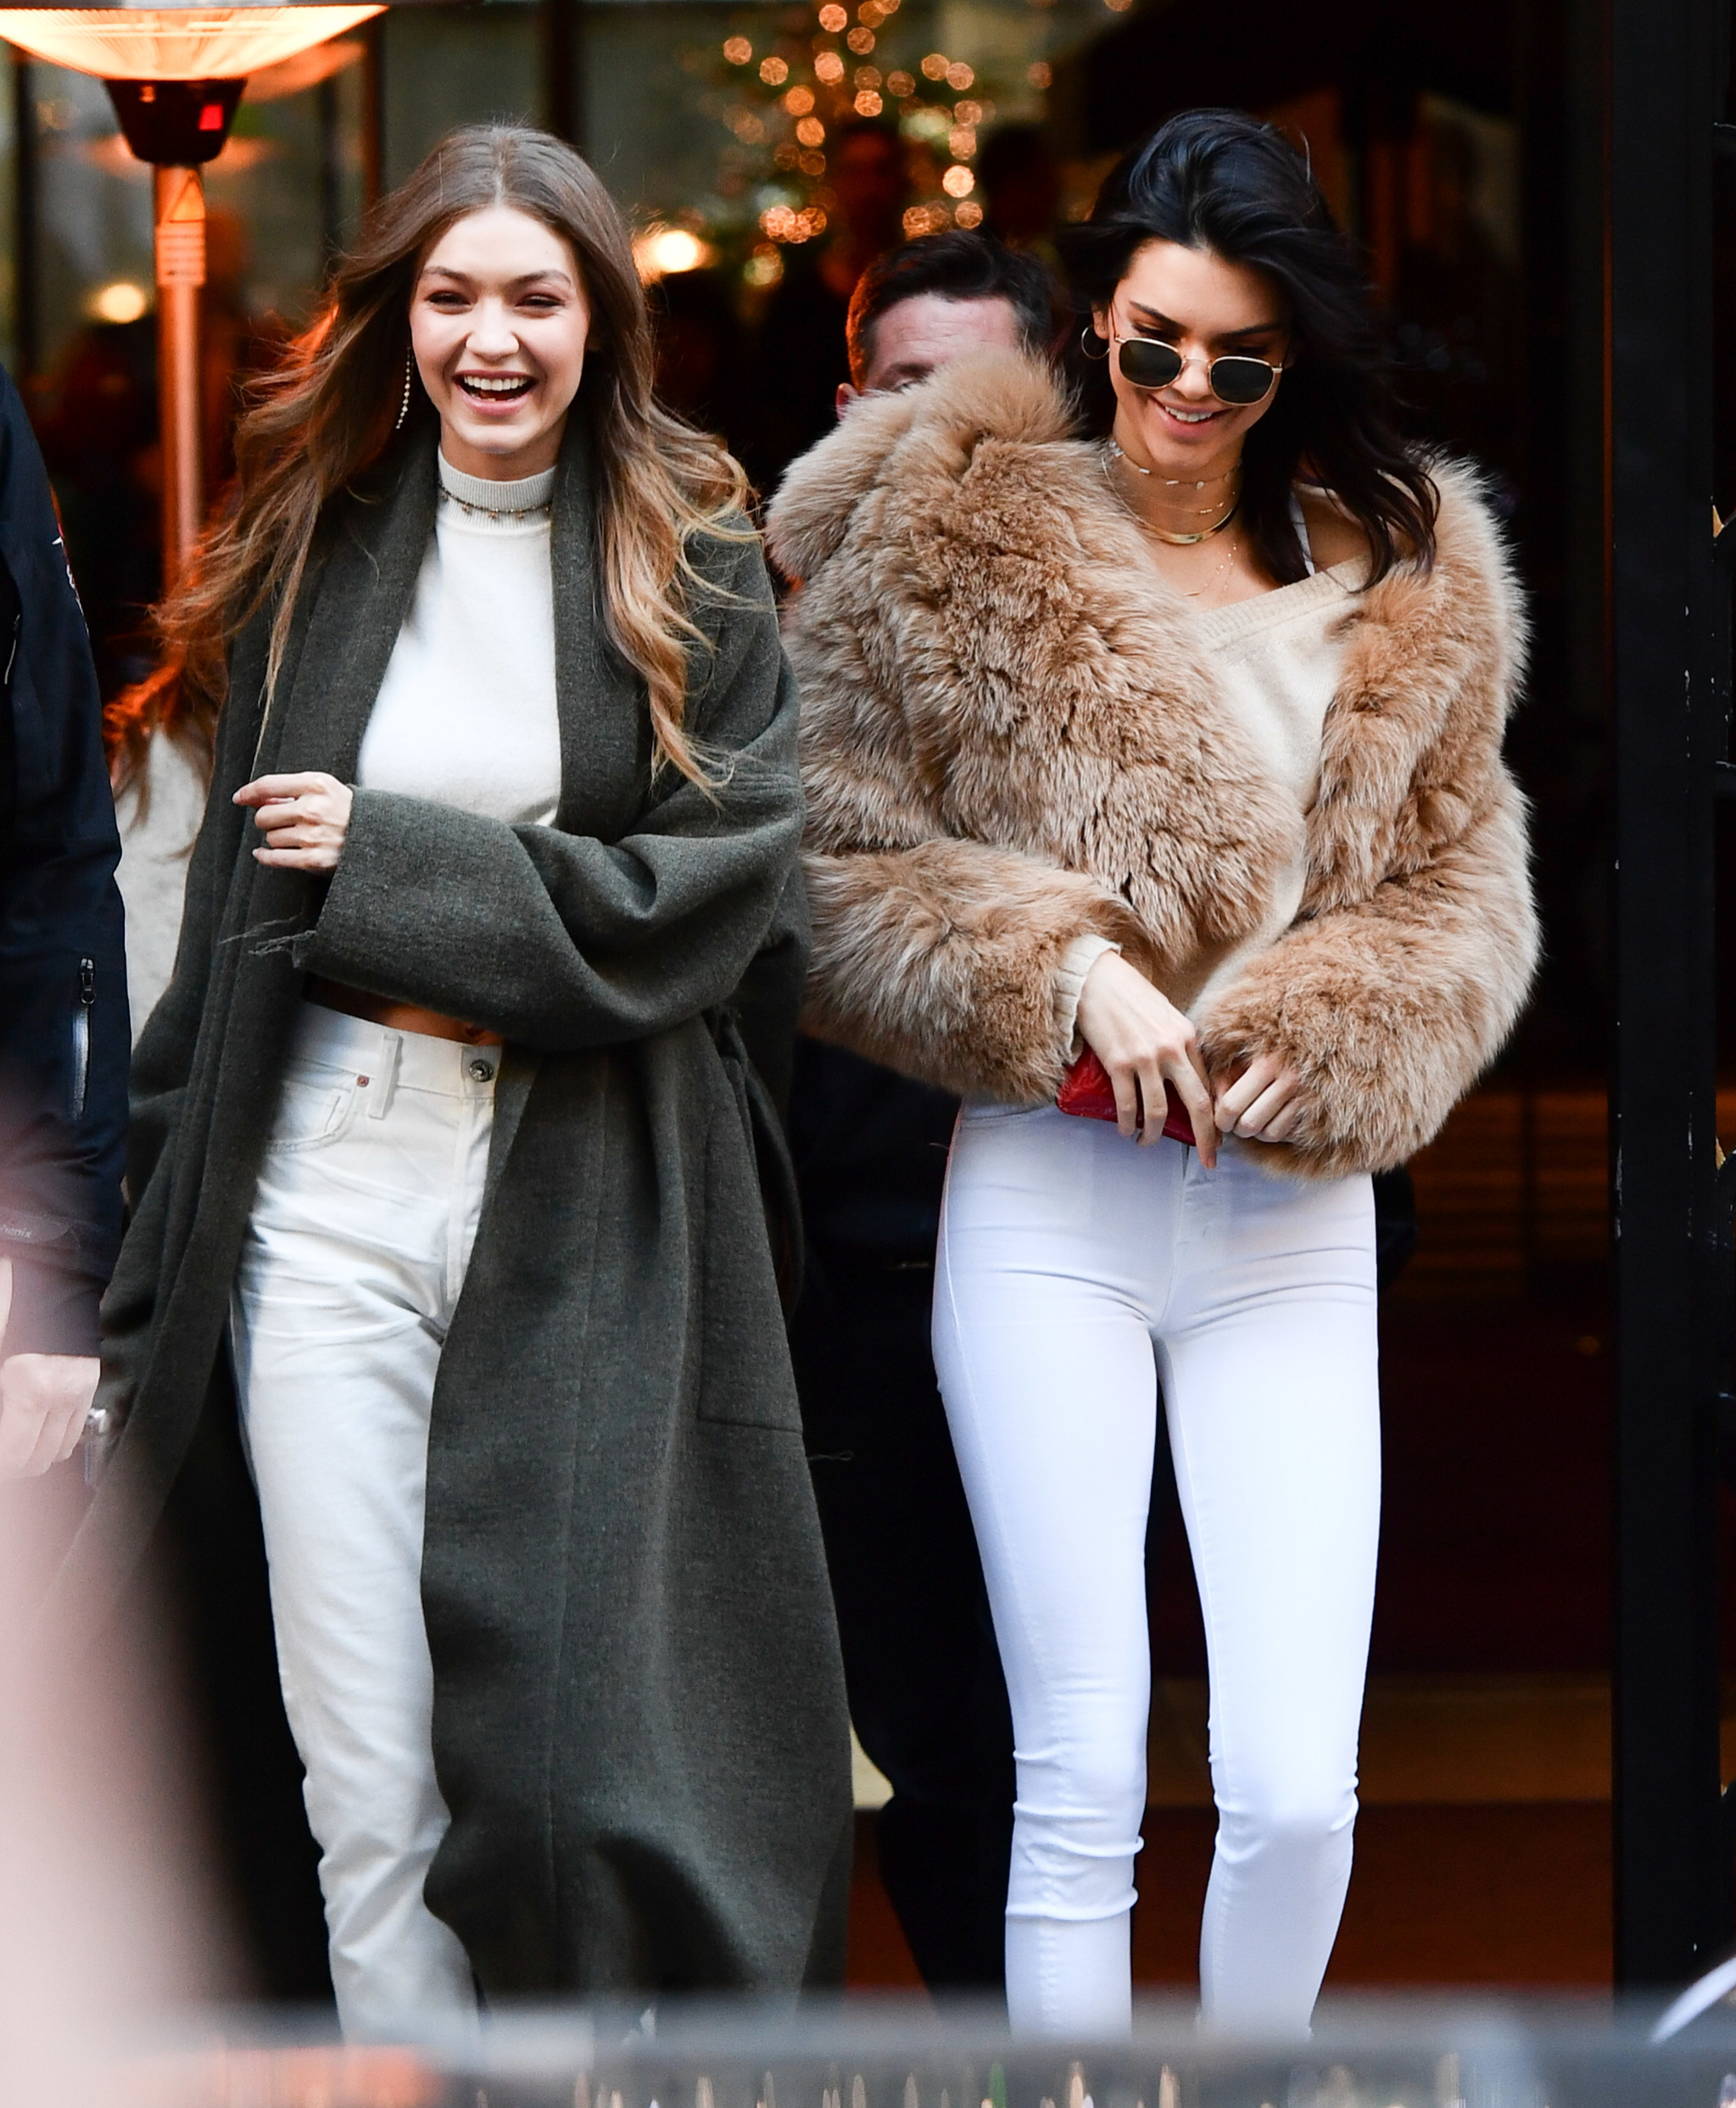 El estilismo binmico de Kendall Jenner y Gigi Hadid es la estrella...